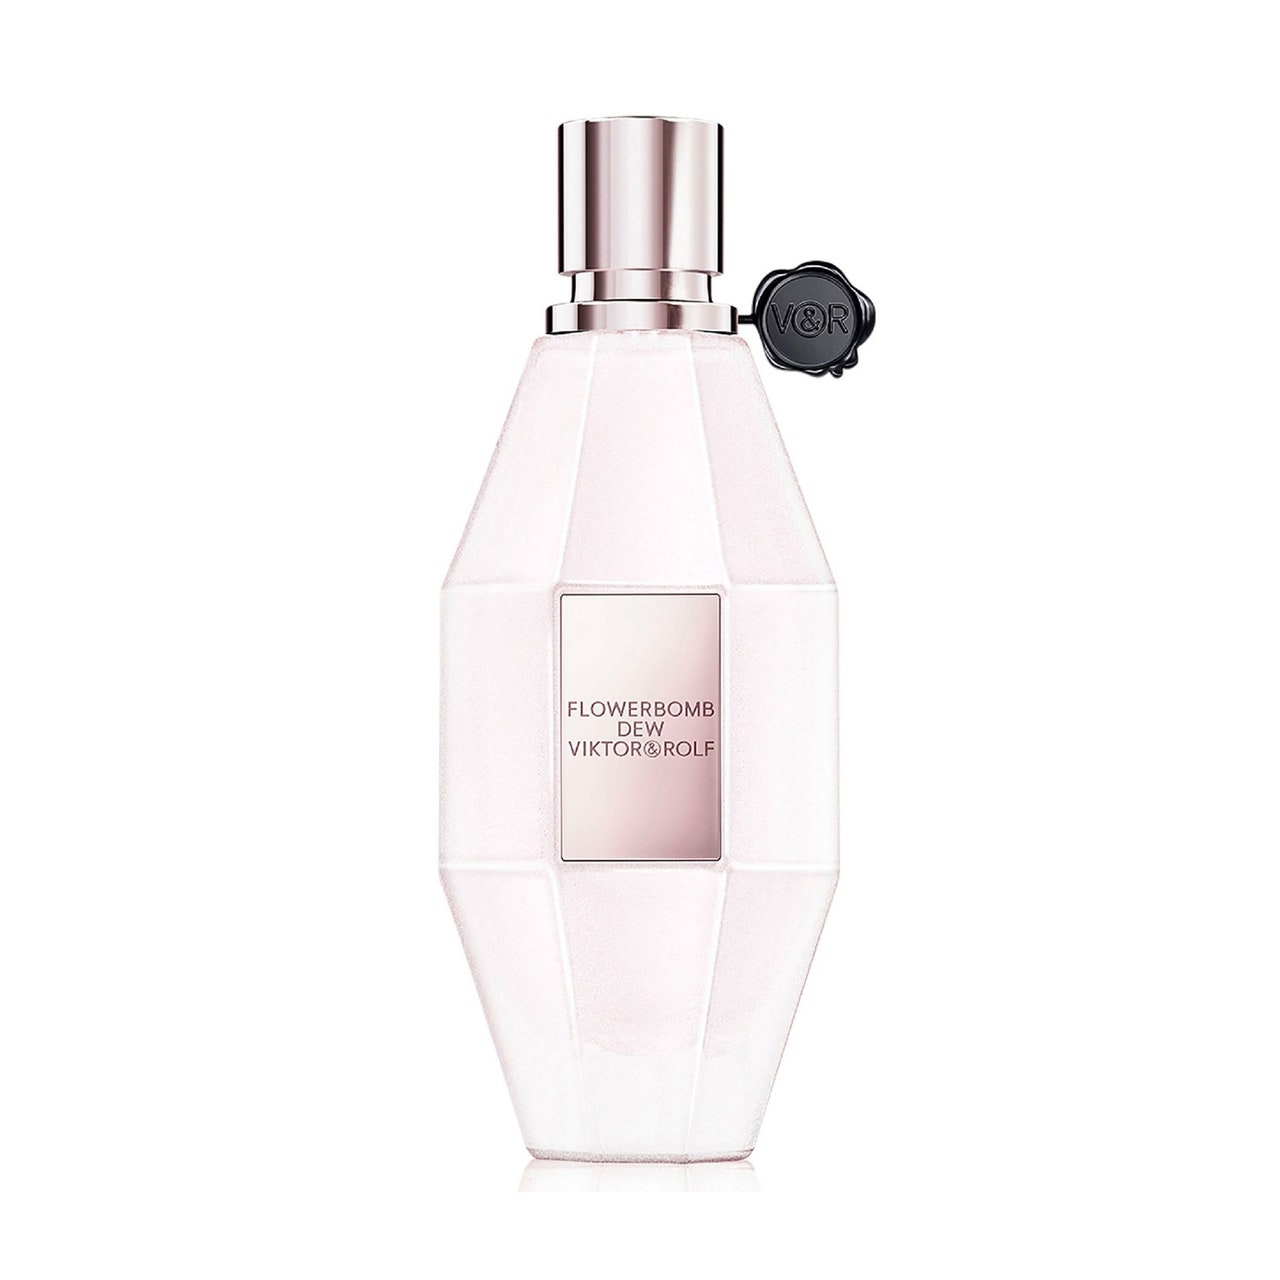 Viktor & Rolf Flowerbomb Dew Eau de Parfum rosa granatenförmige Parfümflasche auf weißem Hintergrund